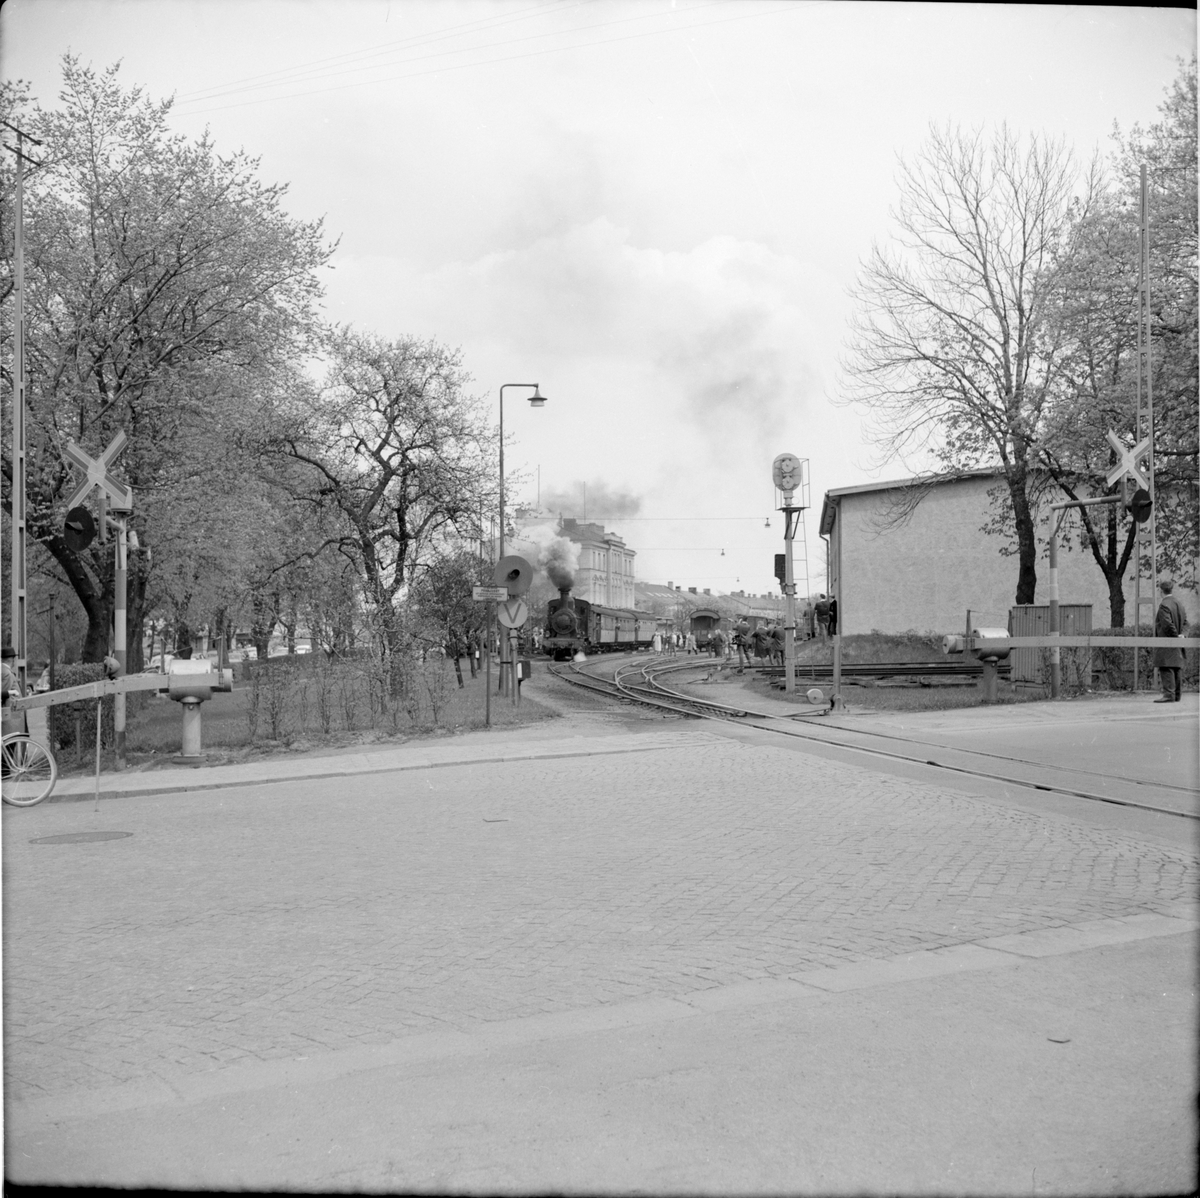 Statens Järnvägar, SJ Gp 3043 i trafik vid järnvägsstation. Bilden är tagen vid SJK-resan.